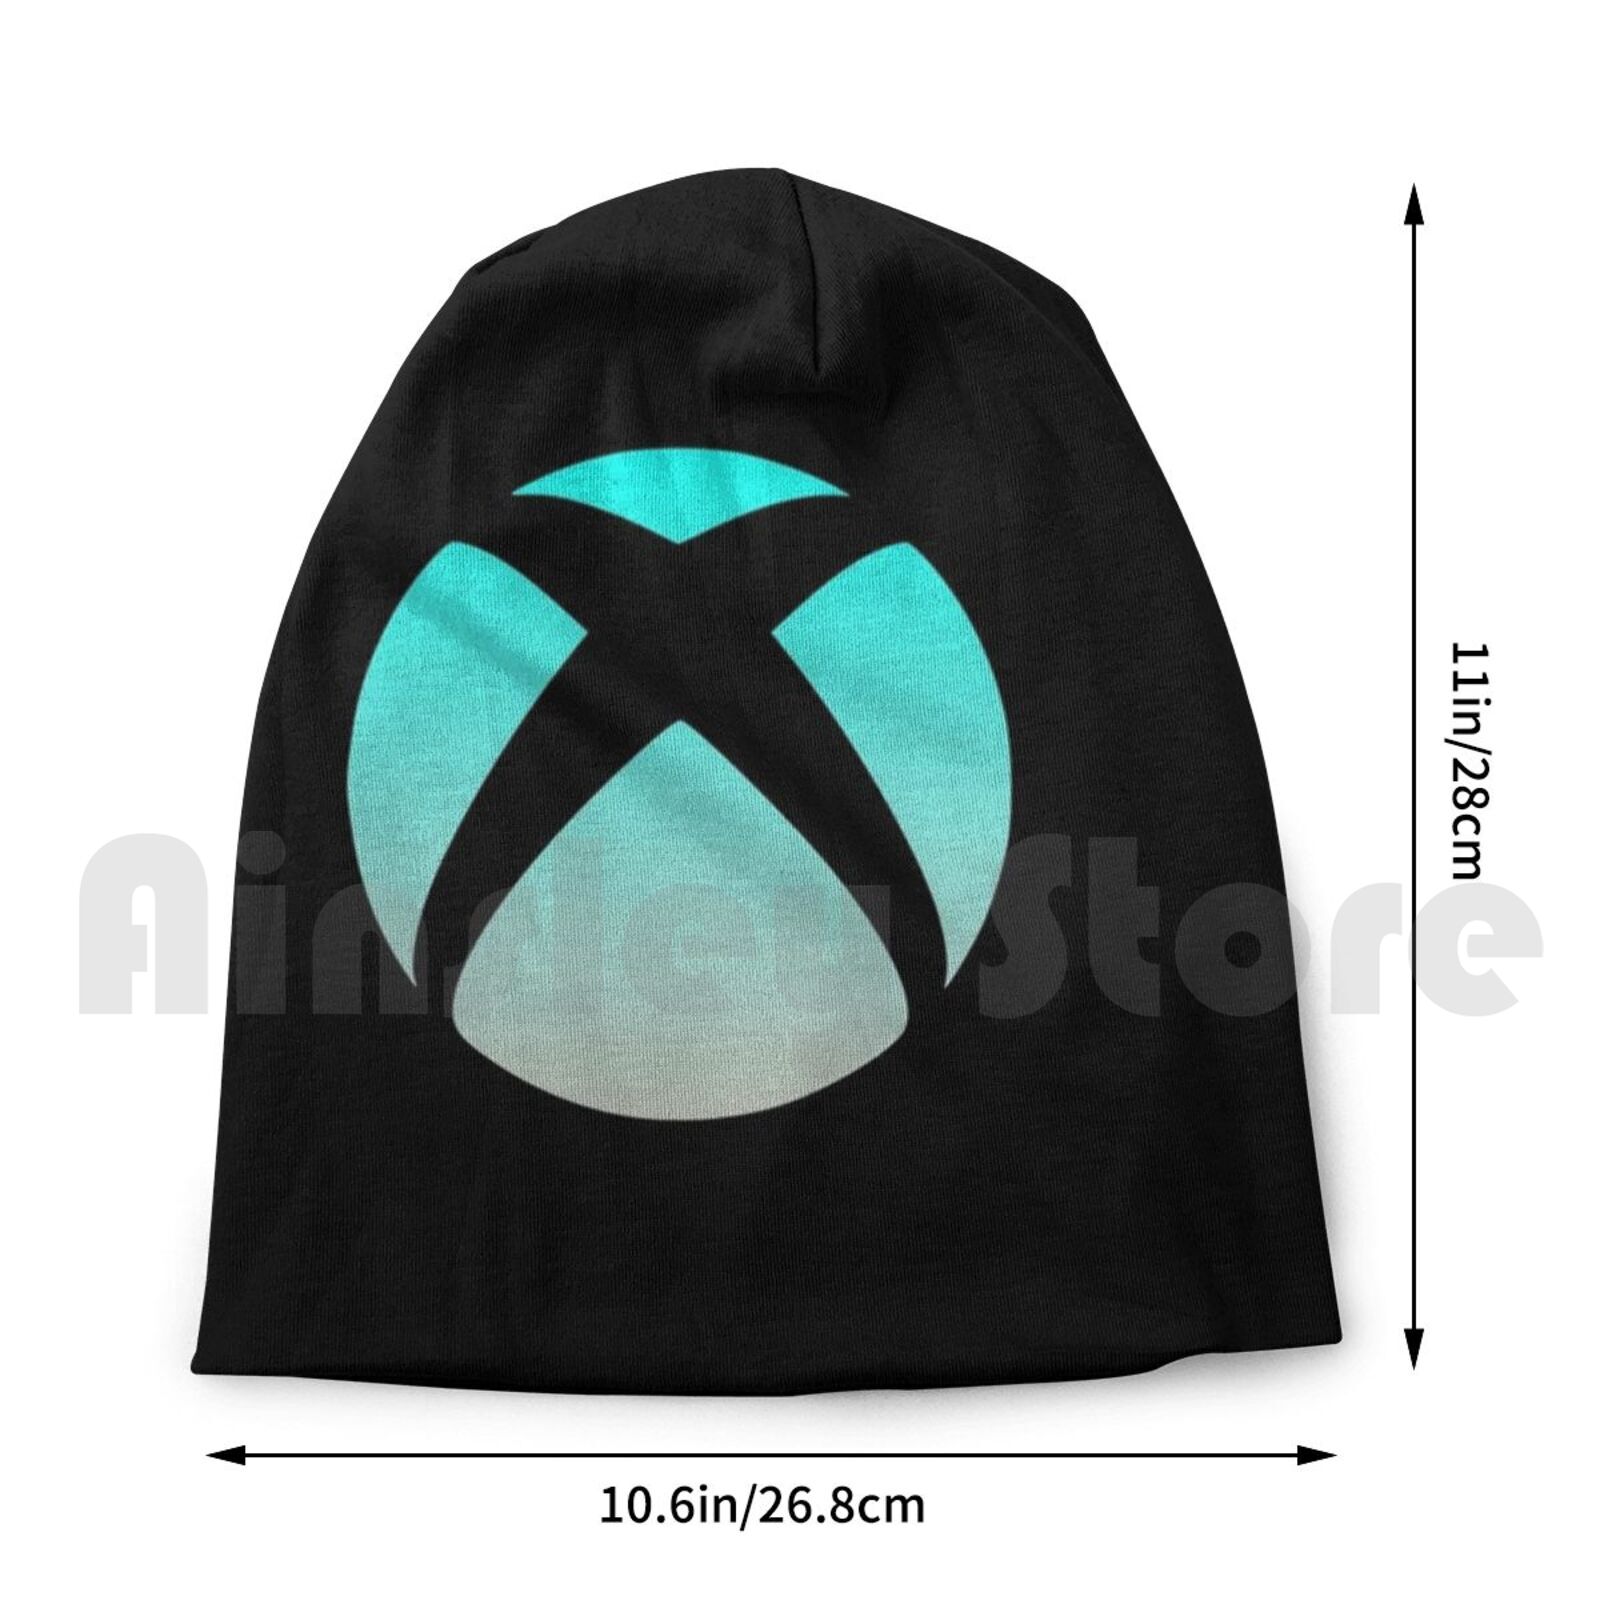 Bonnet-tricot-avec-Logo-d-grad-Xbox-2144-bonnet-imprim-jaune-Microsoft-Xbox-One-Xbox-X